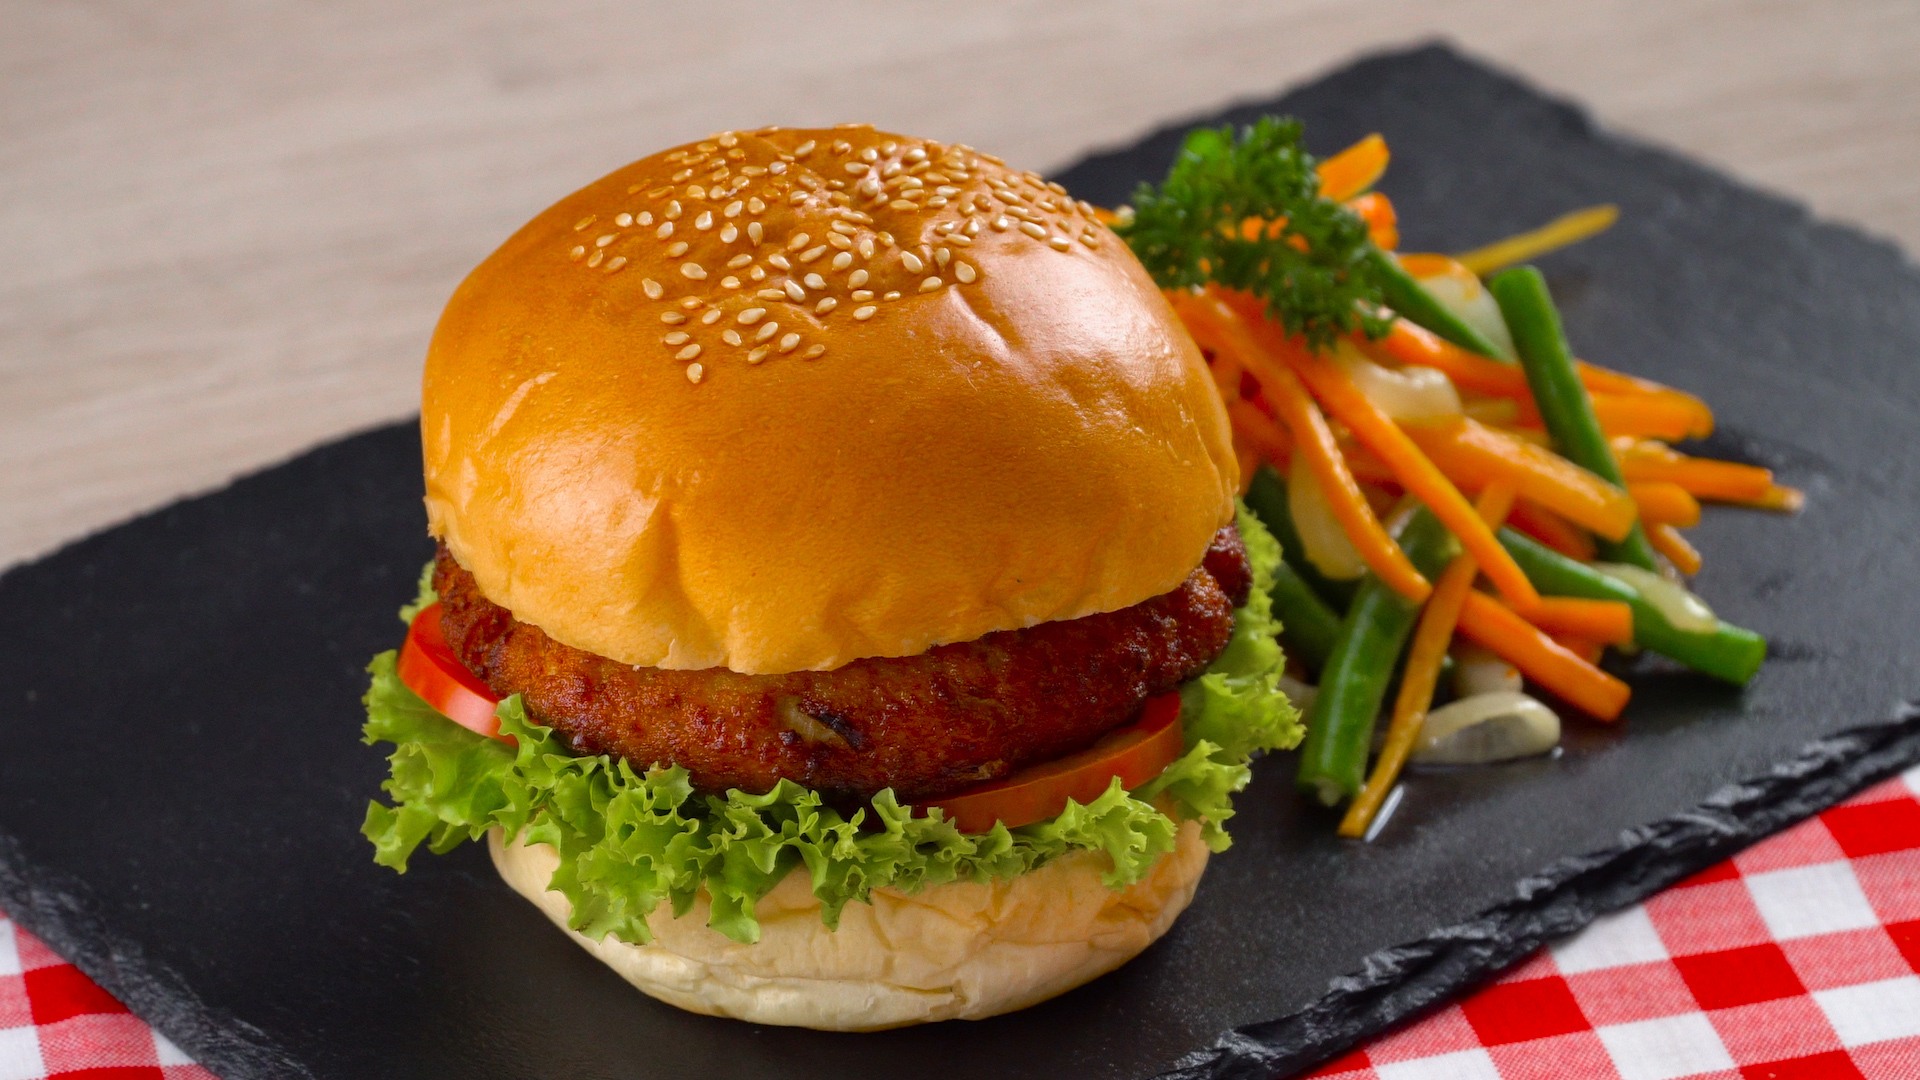 Resep Burger Rendang Tahu dan Sayuran - Masak Apa Hari Ini?